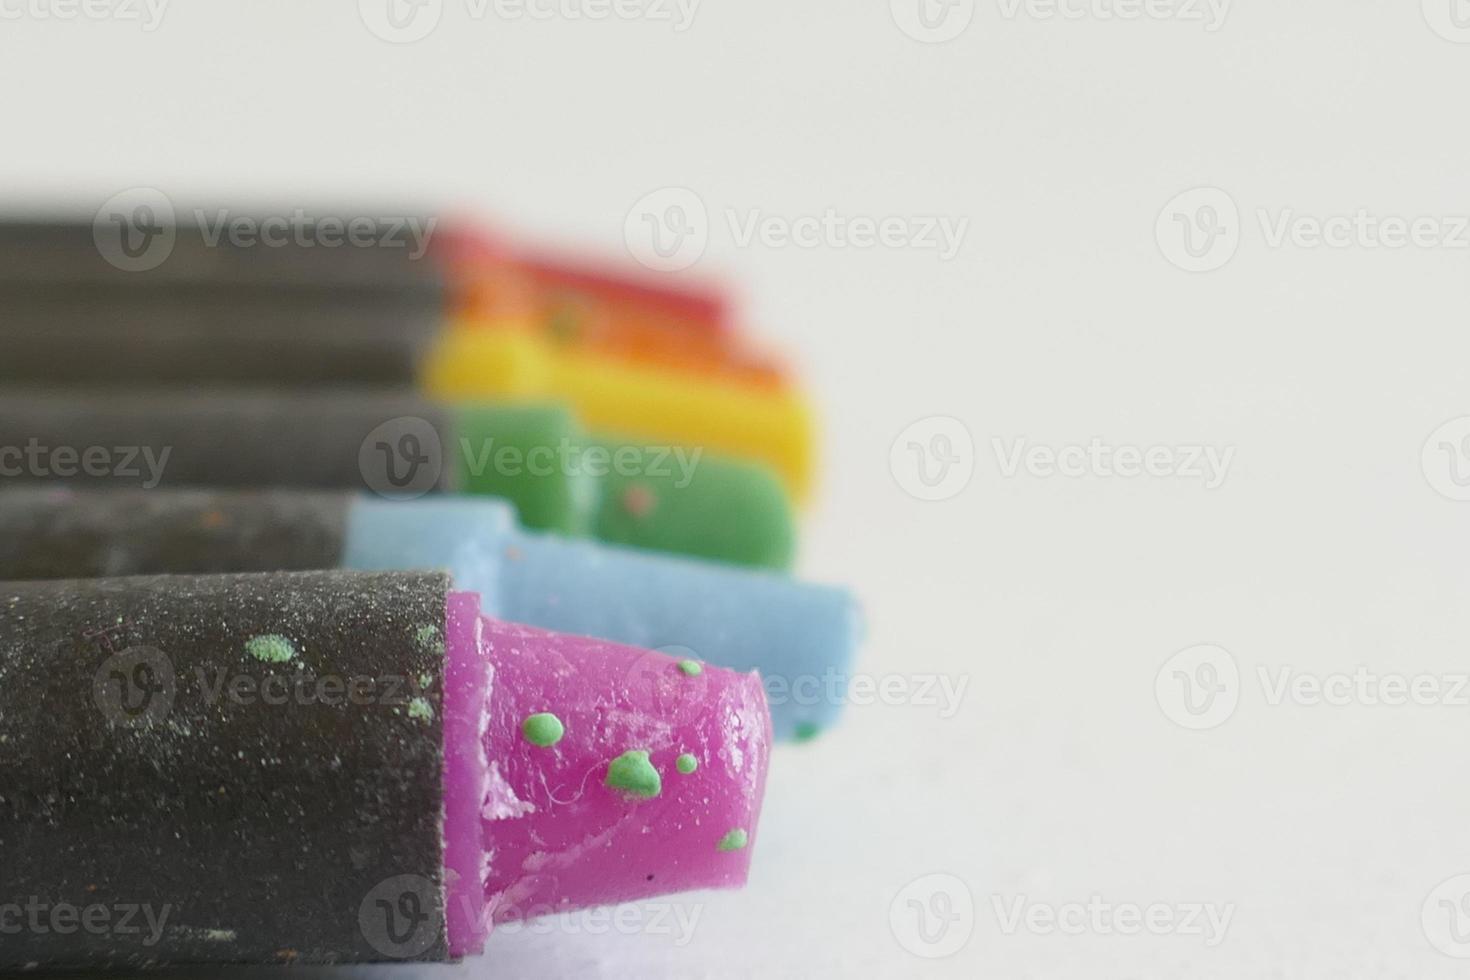 mehrfarbige Buntstifte vor weißem Hintergrund foto